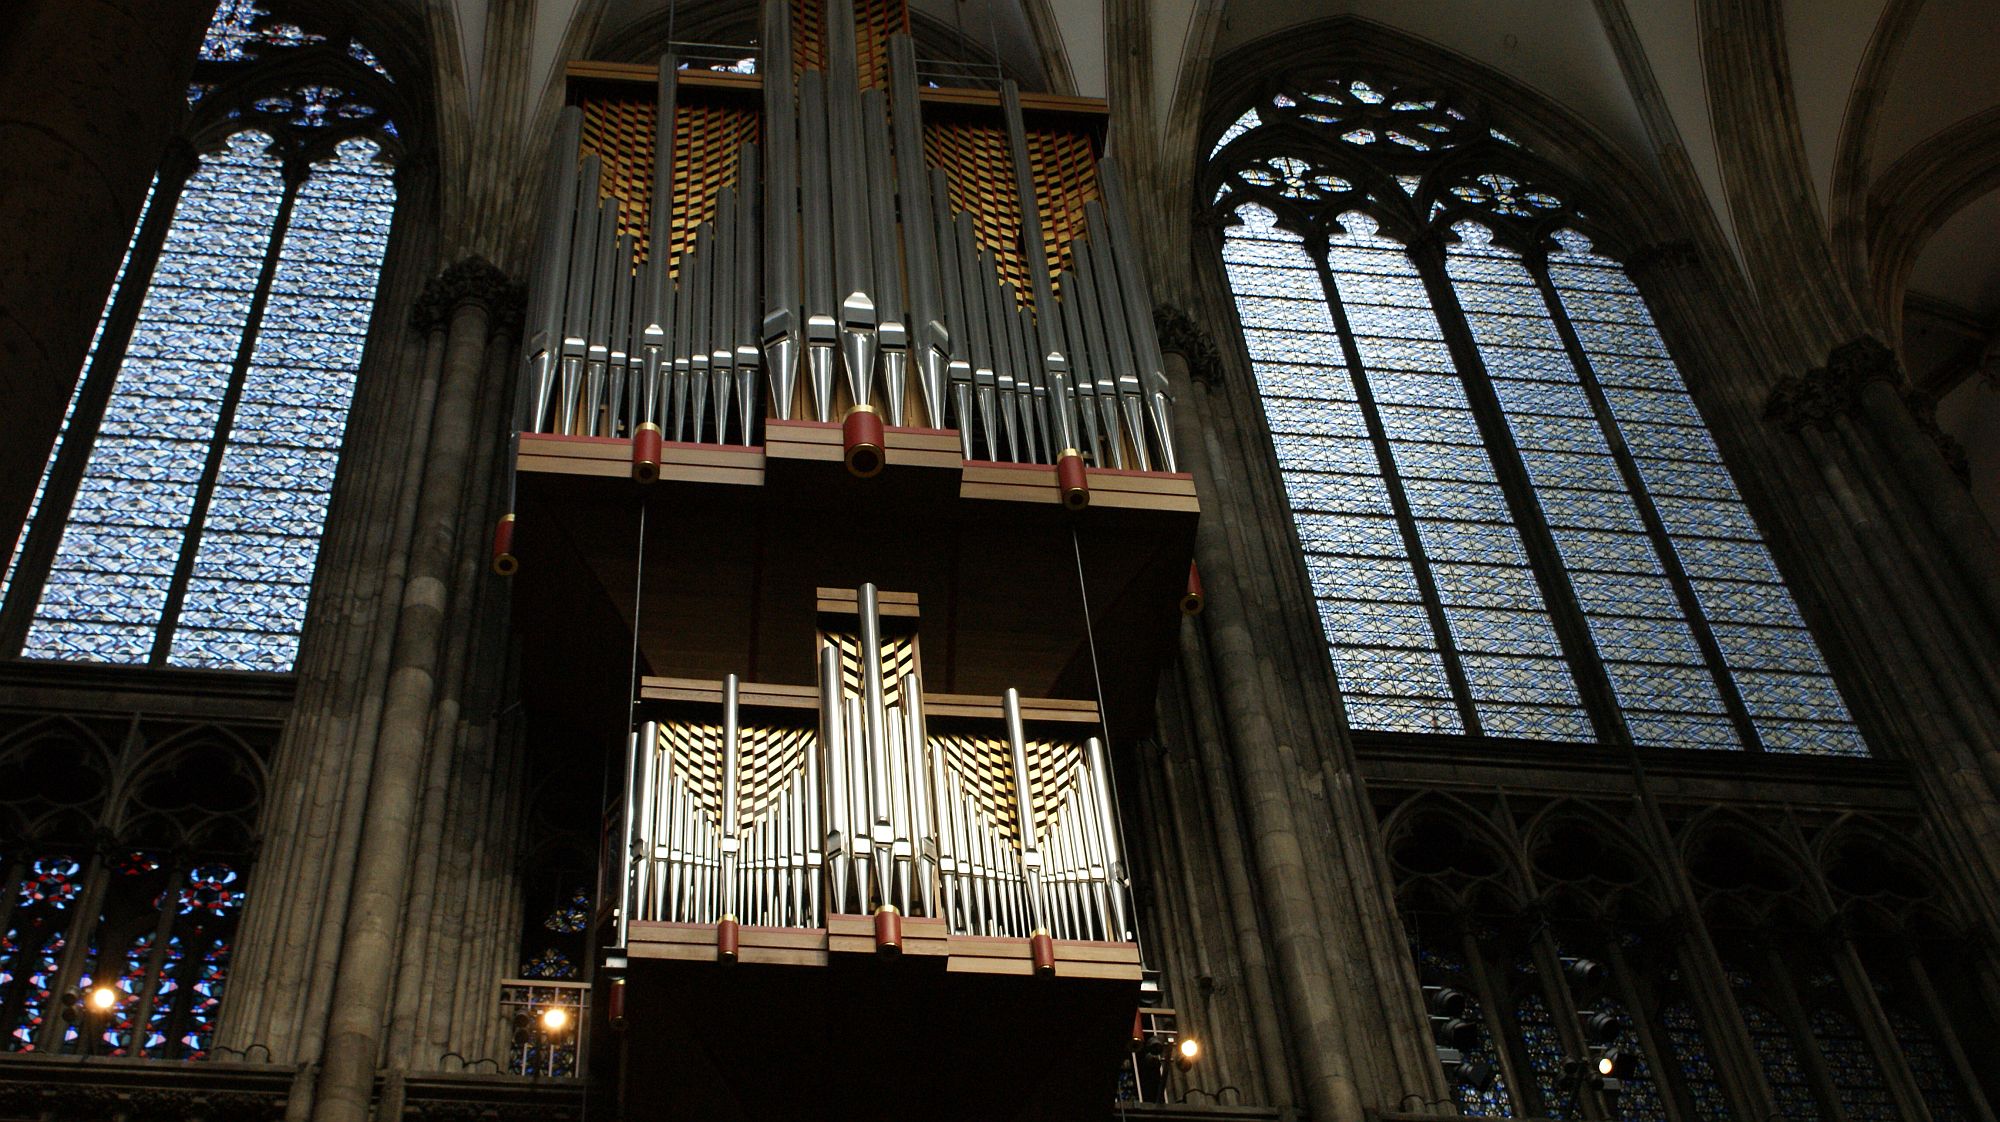 Orgel im Kölner Dom (c) Torsten Ohland/pixelio.de